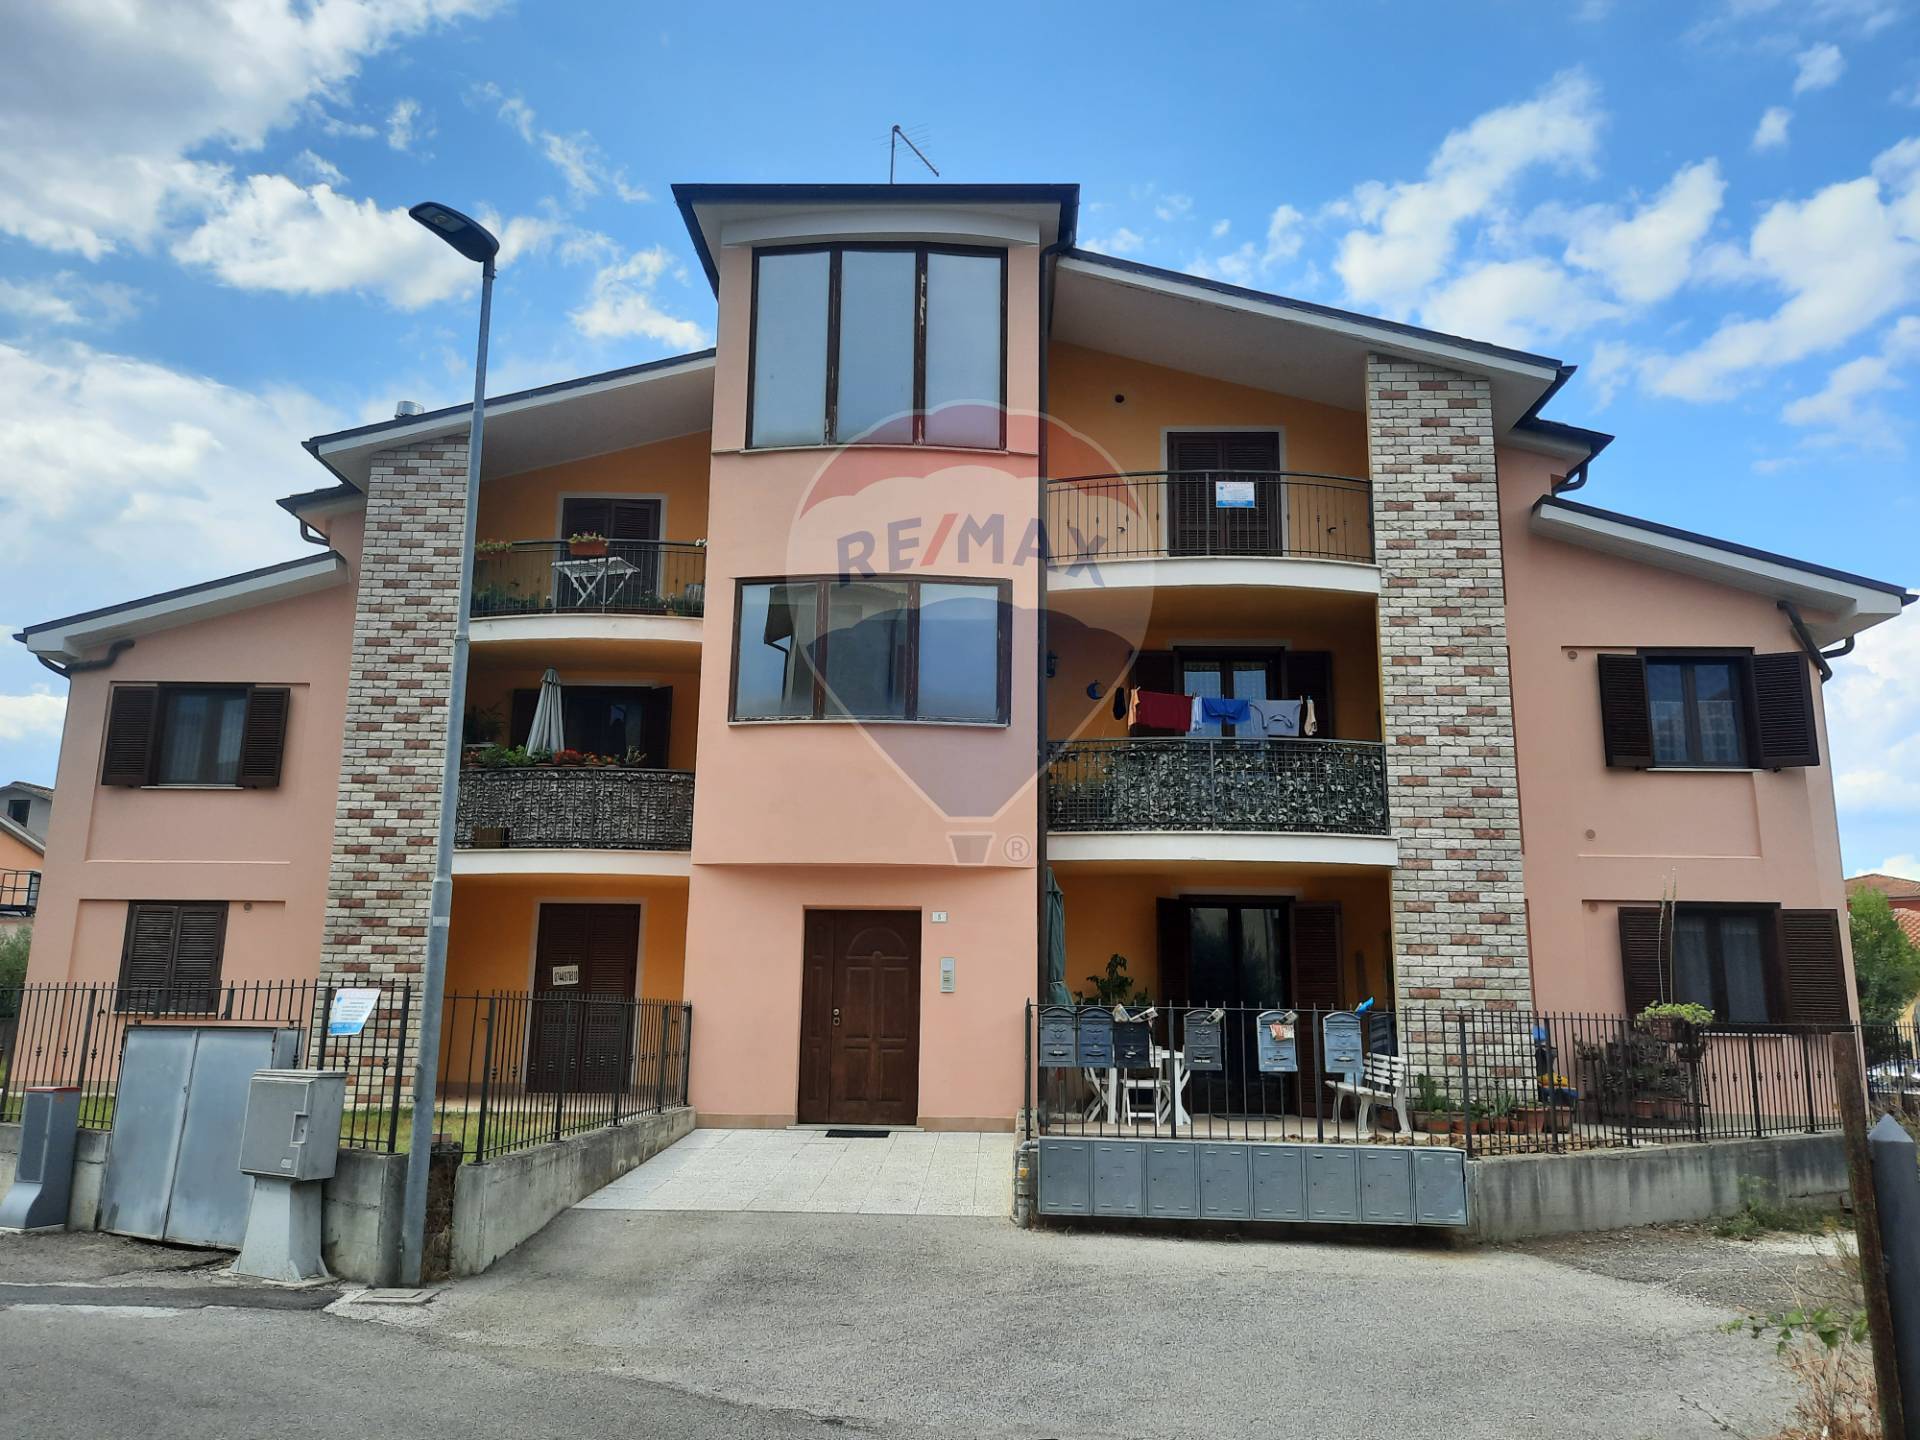 Appartamento in vendita a Attigliano, 3 locali, prezzo € 74.000 | CambioCasa.it